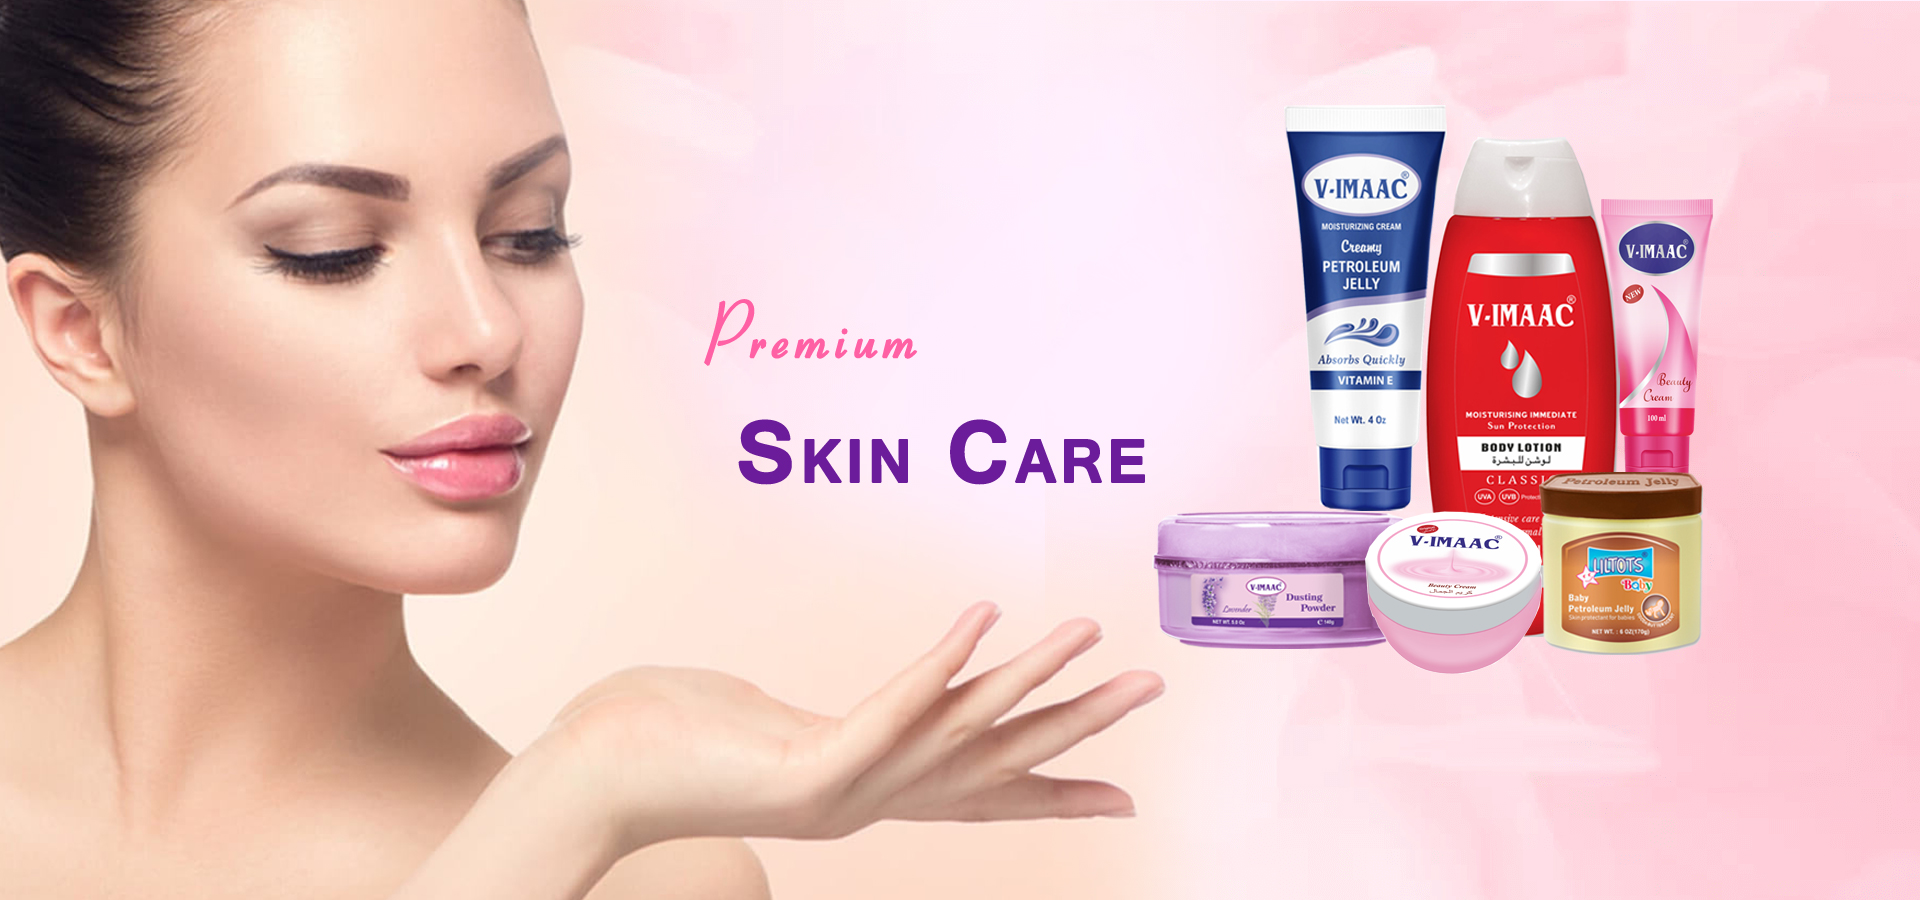 Premium Skin Care